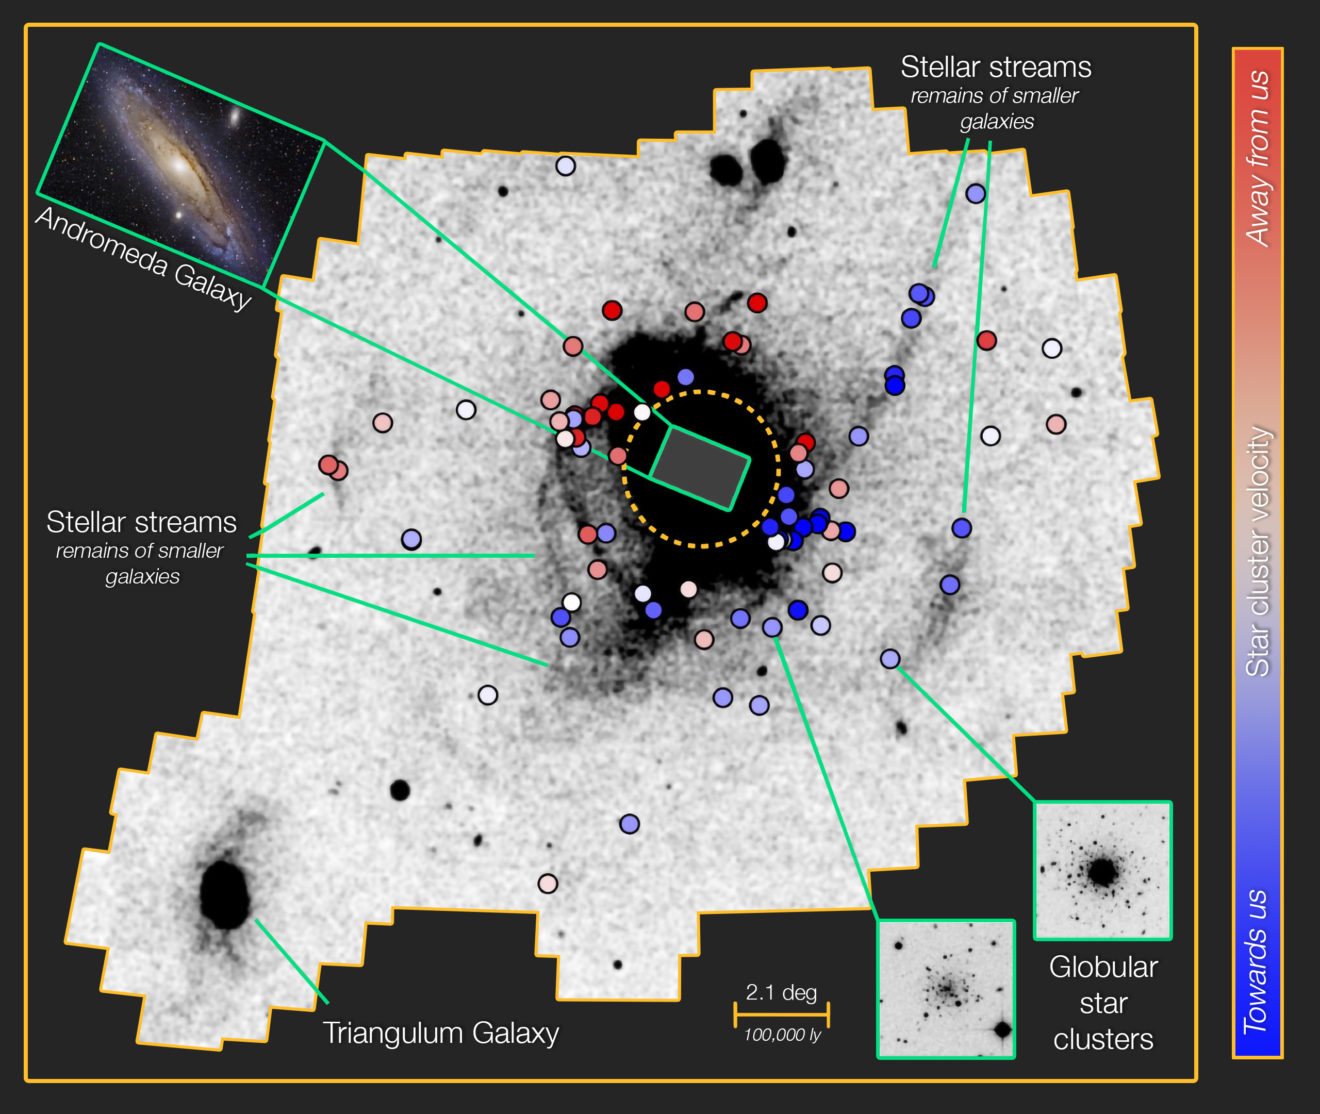 Het heftige verleden van het Andromedastelsel is vastgelegd